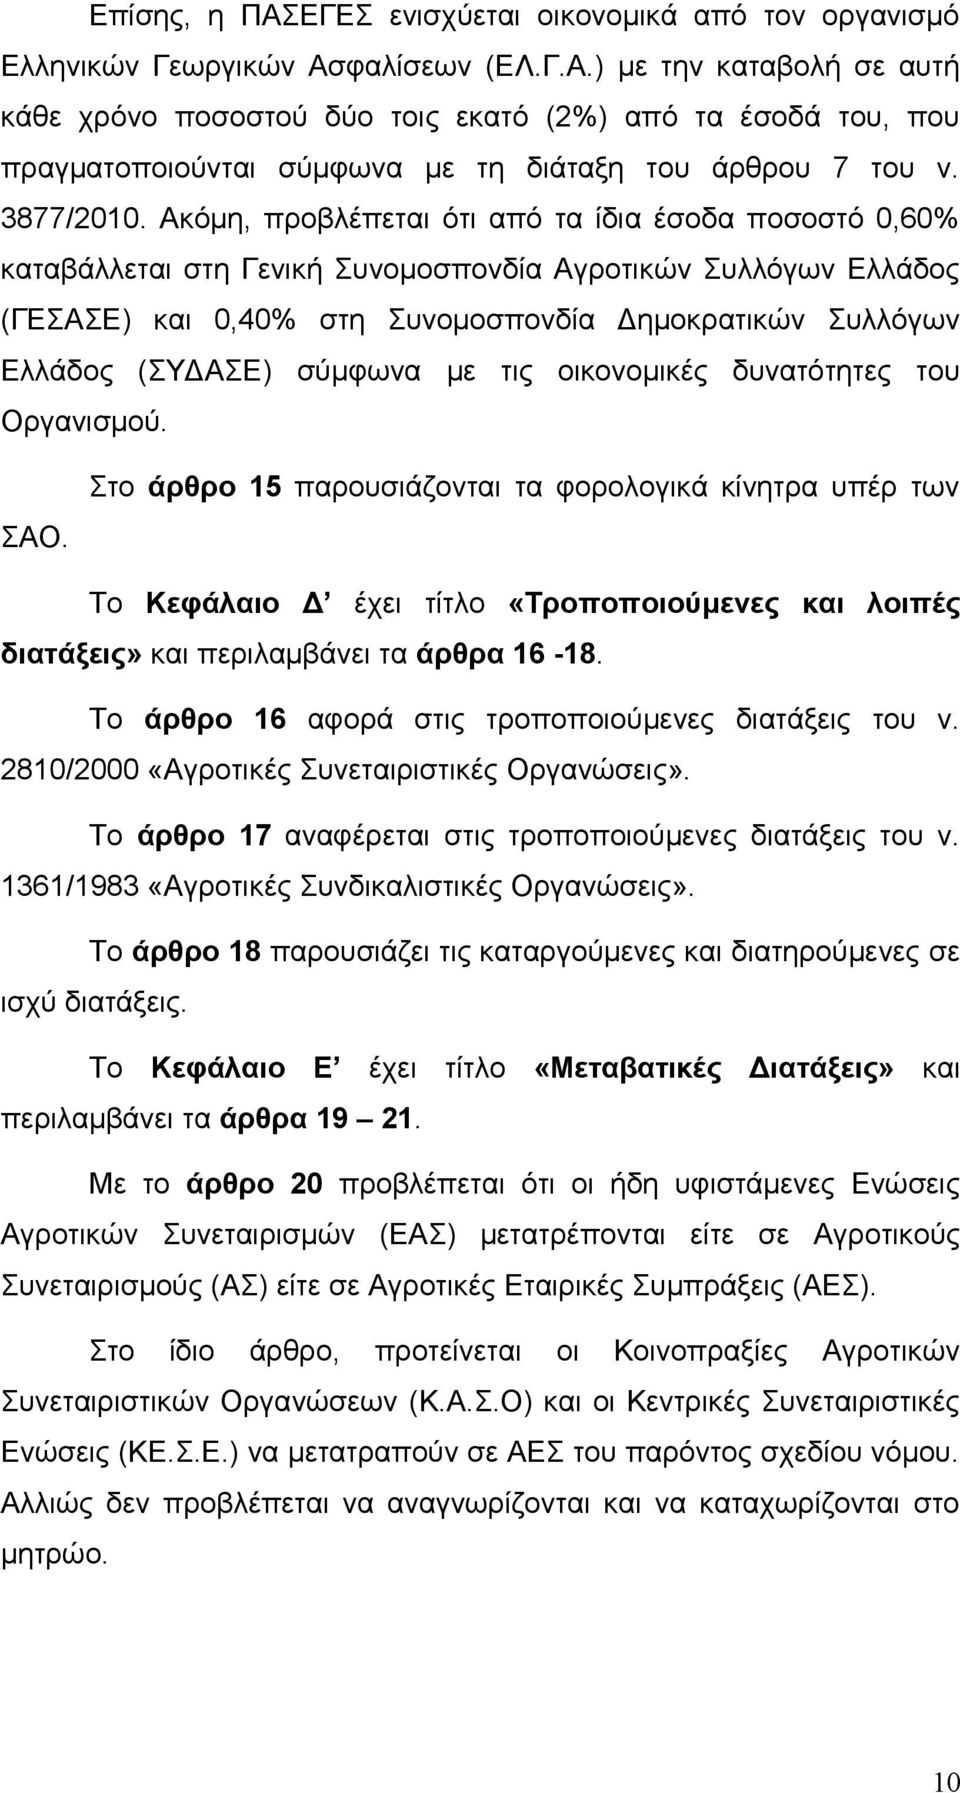 Ακόμη, προβλέπεται ότι από τα ίδια έσοδα ποσοστό 0,60% καταβάλλεται στη Γενική Συνομοσπονδία Αγροτικών Συλλόγων Ελλάδος (ΓΕΣΑΣΕ) και 0,40% στη Συνομοσπονδία Δημοκρατικών Συλλόγων Ελλάδος (ΣΥΔΑΣΕ)